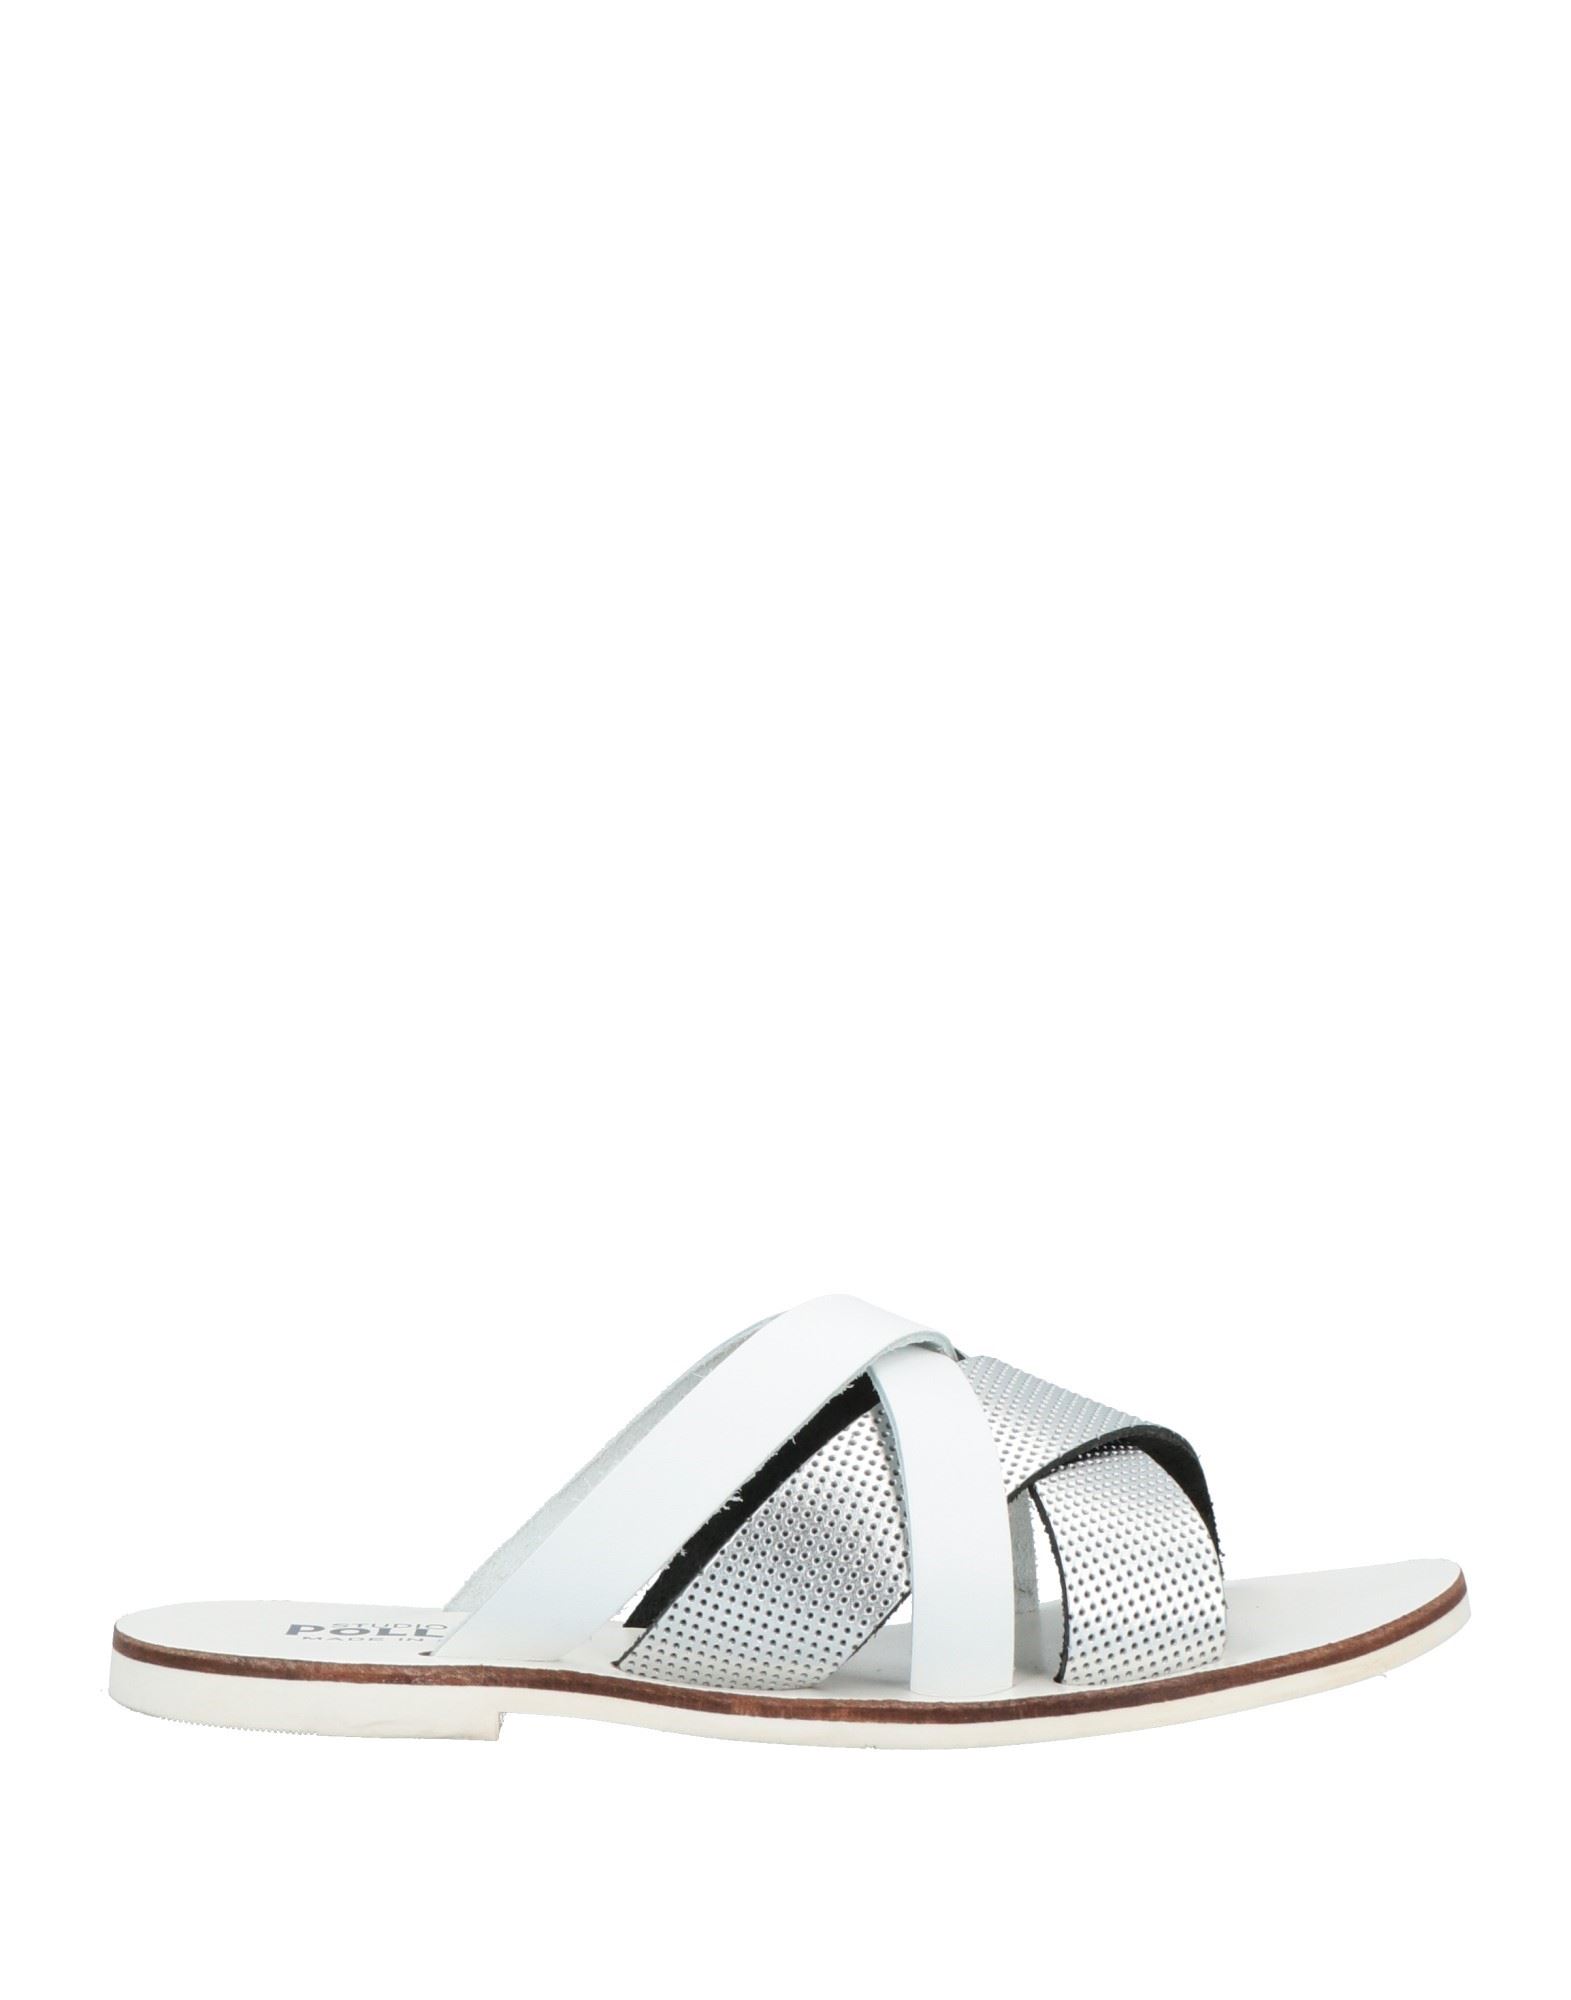 Studio Pollini Sandals In Silver